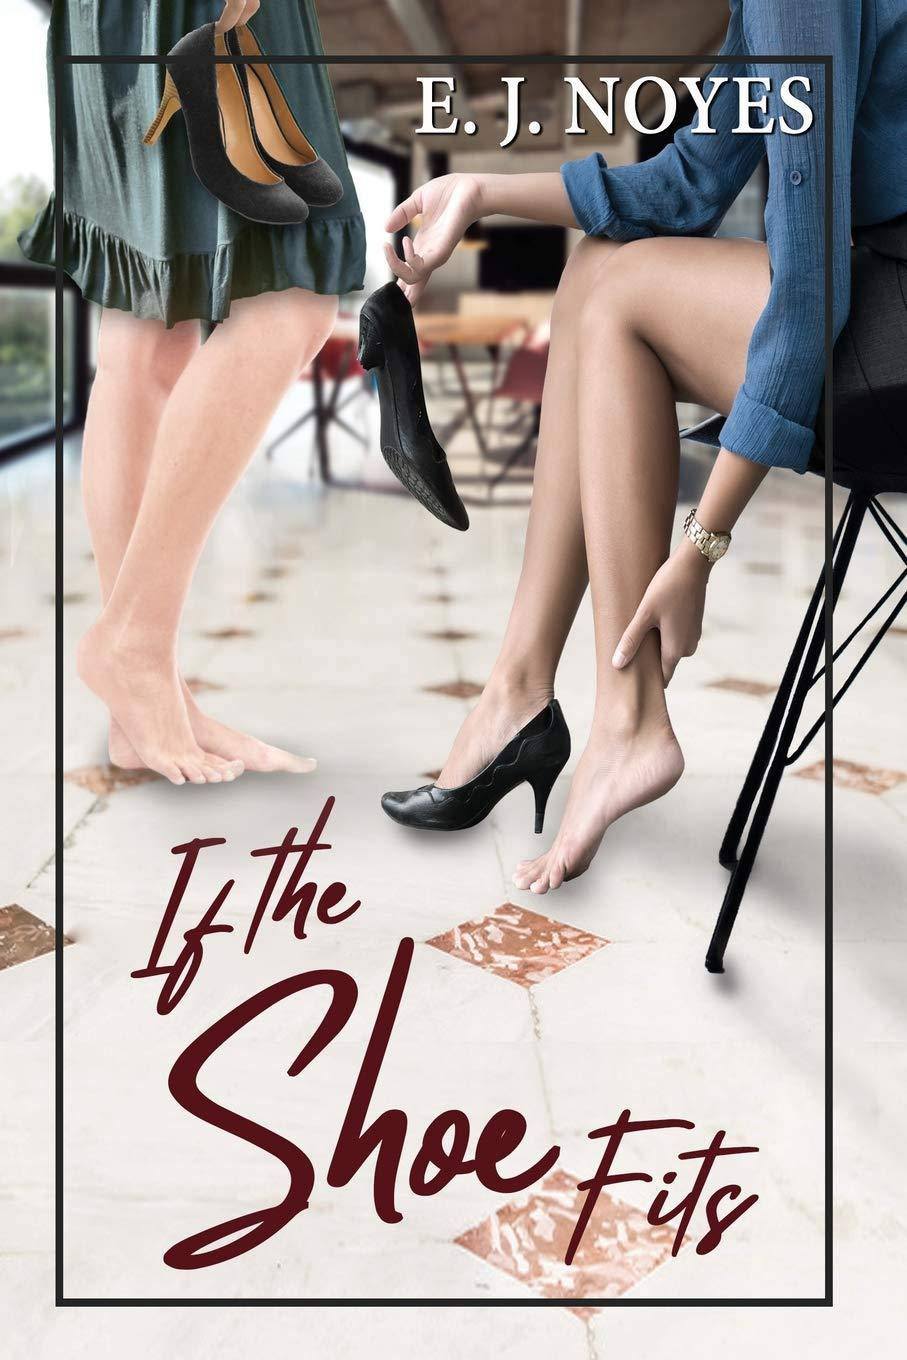 If The Shoe Fits - SureShot Books Publishing LLC